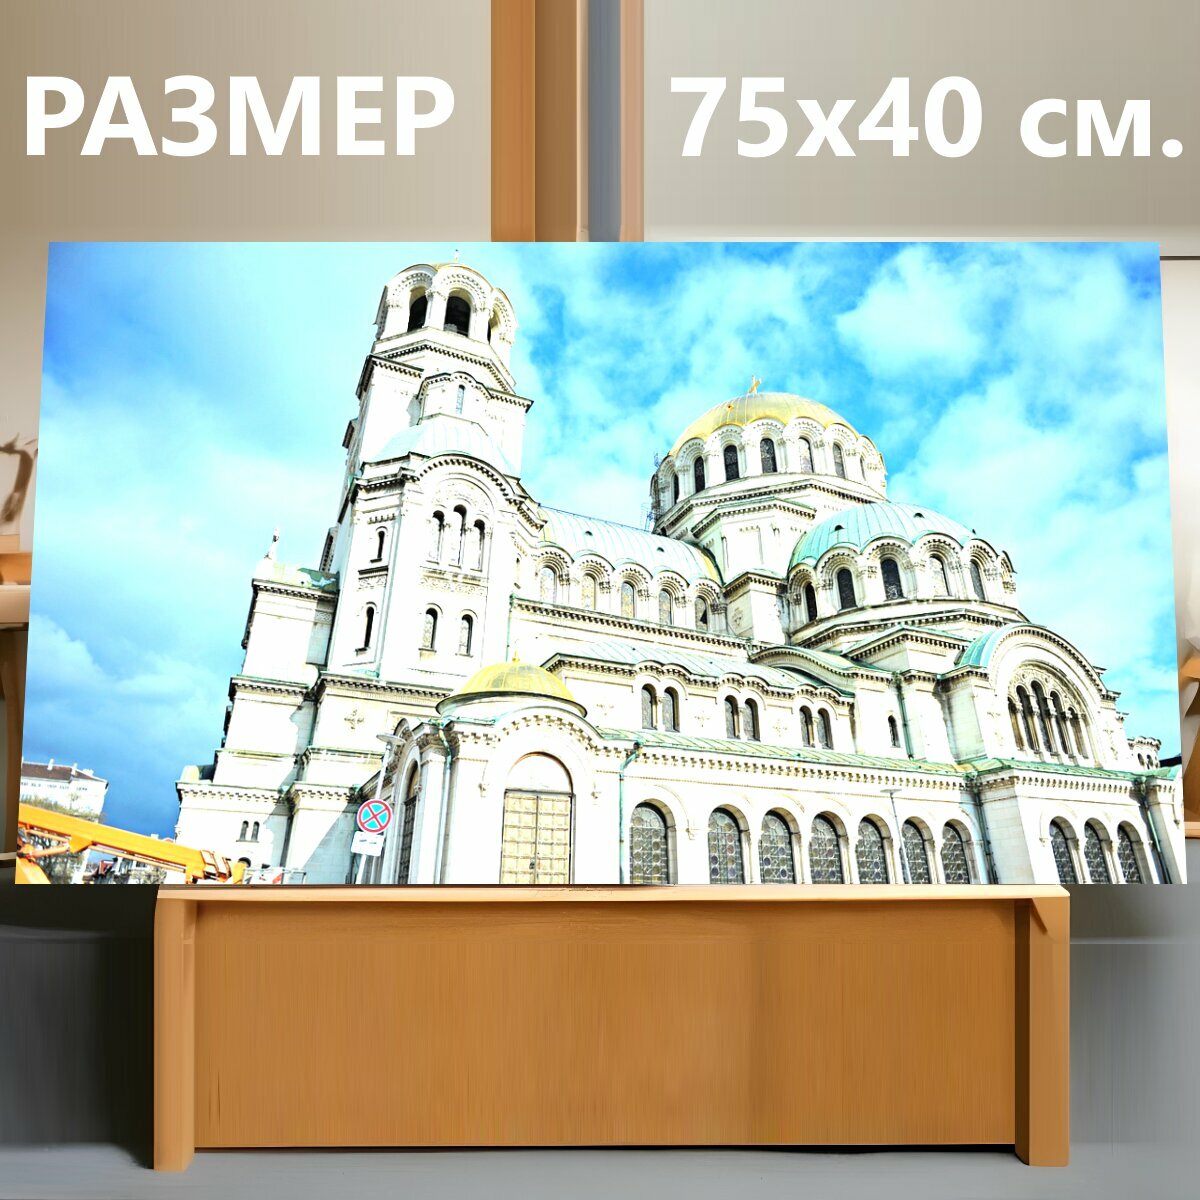 Картина на холсте "Собор александра невского, церковь, архитектуры" на подрамнике 75х40 см. для интерьера